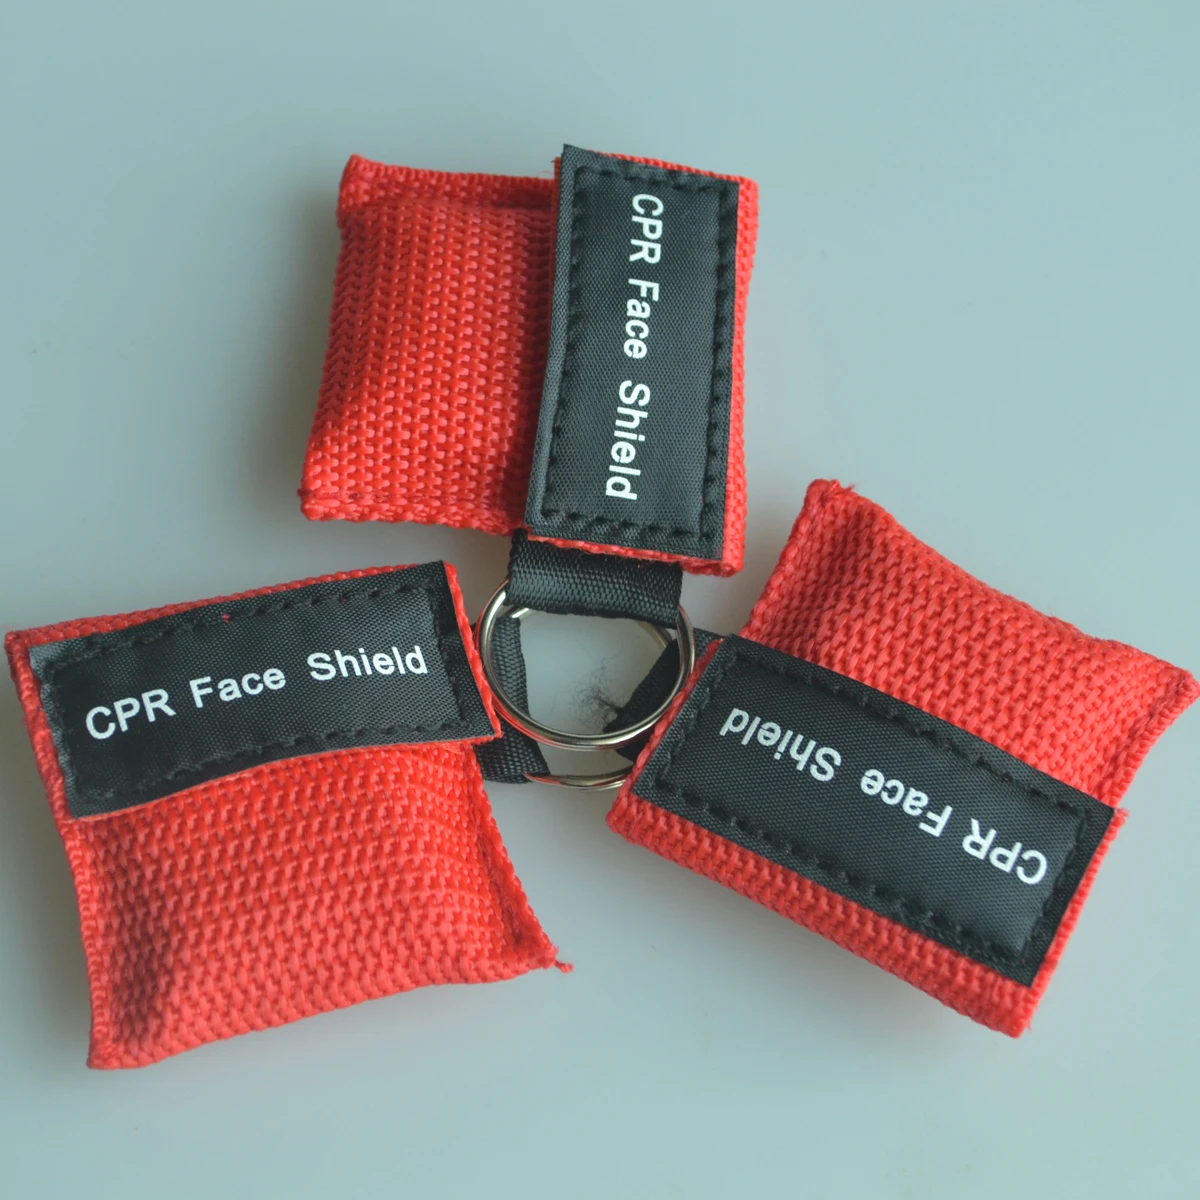 20 шт./лот маска для искусственного дыхания при реанимации защитный экран CPR от рта до рта дыхательный барьер Защита лица аварийный спасательный комплект с красной сумкой